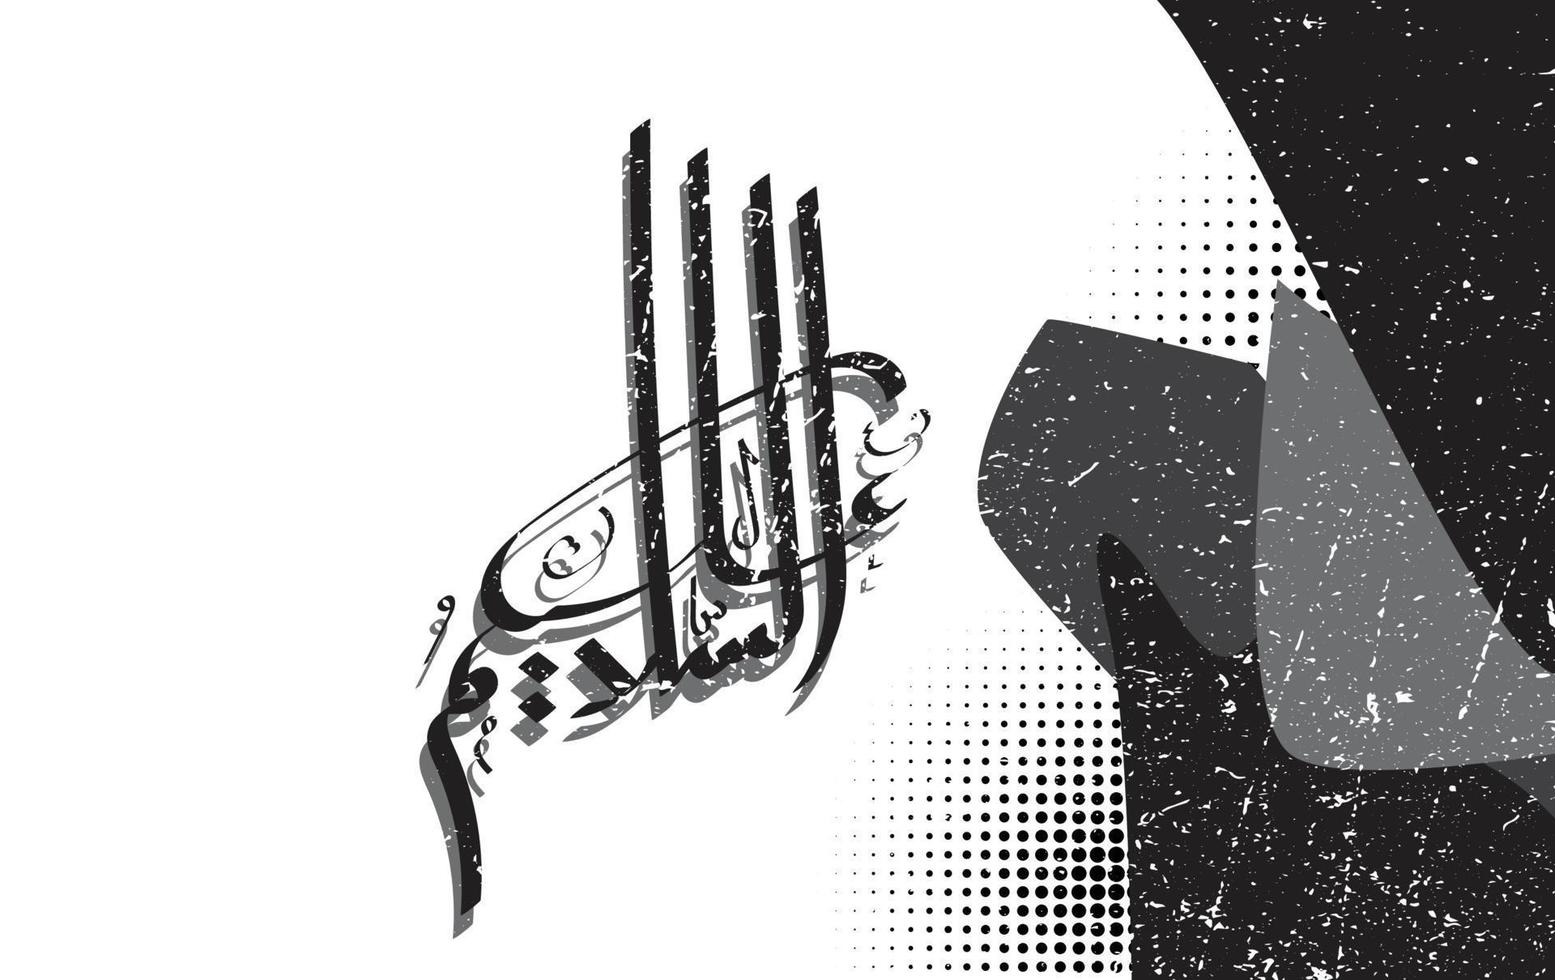 árabe caligrafia Assalamualaikum com Preto e branco grunge fundo, traduzido como, pode a paz, misericórdia e bênçãos do Deus estar sobre você vetor